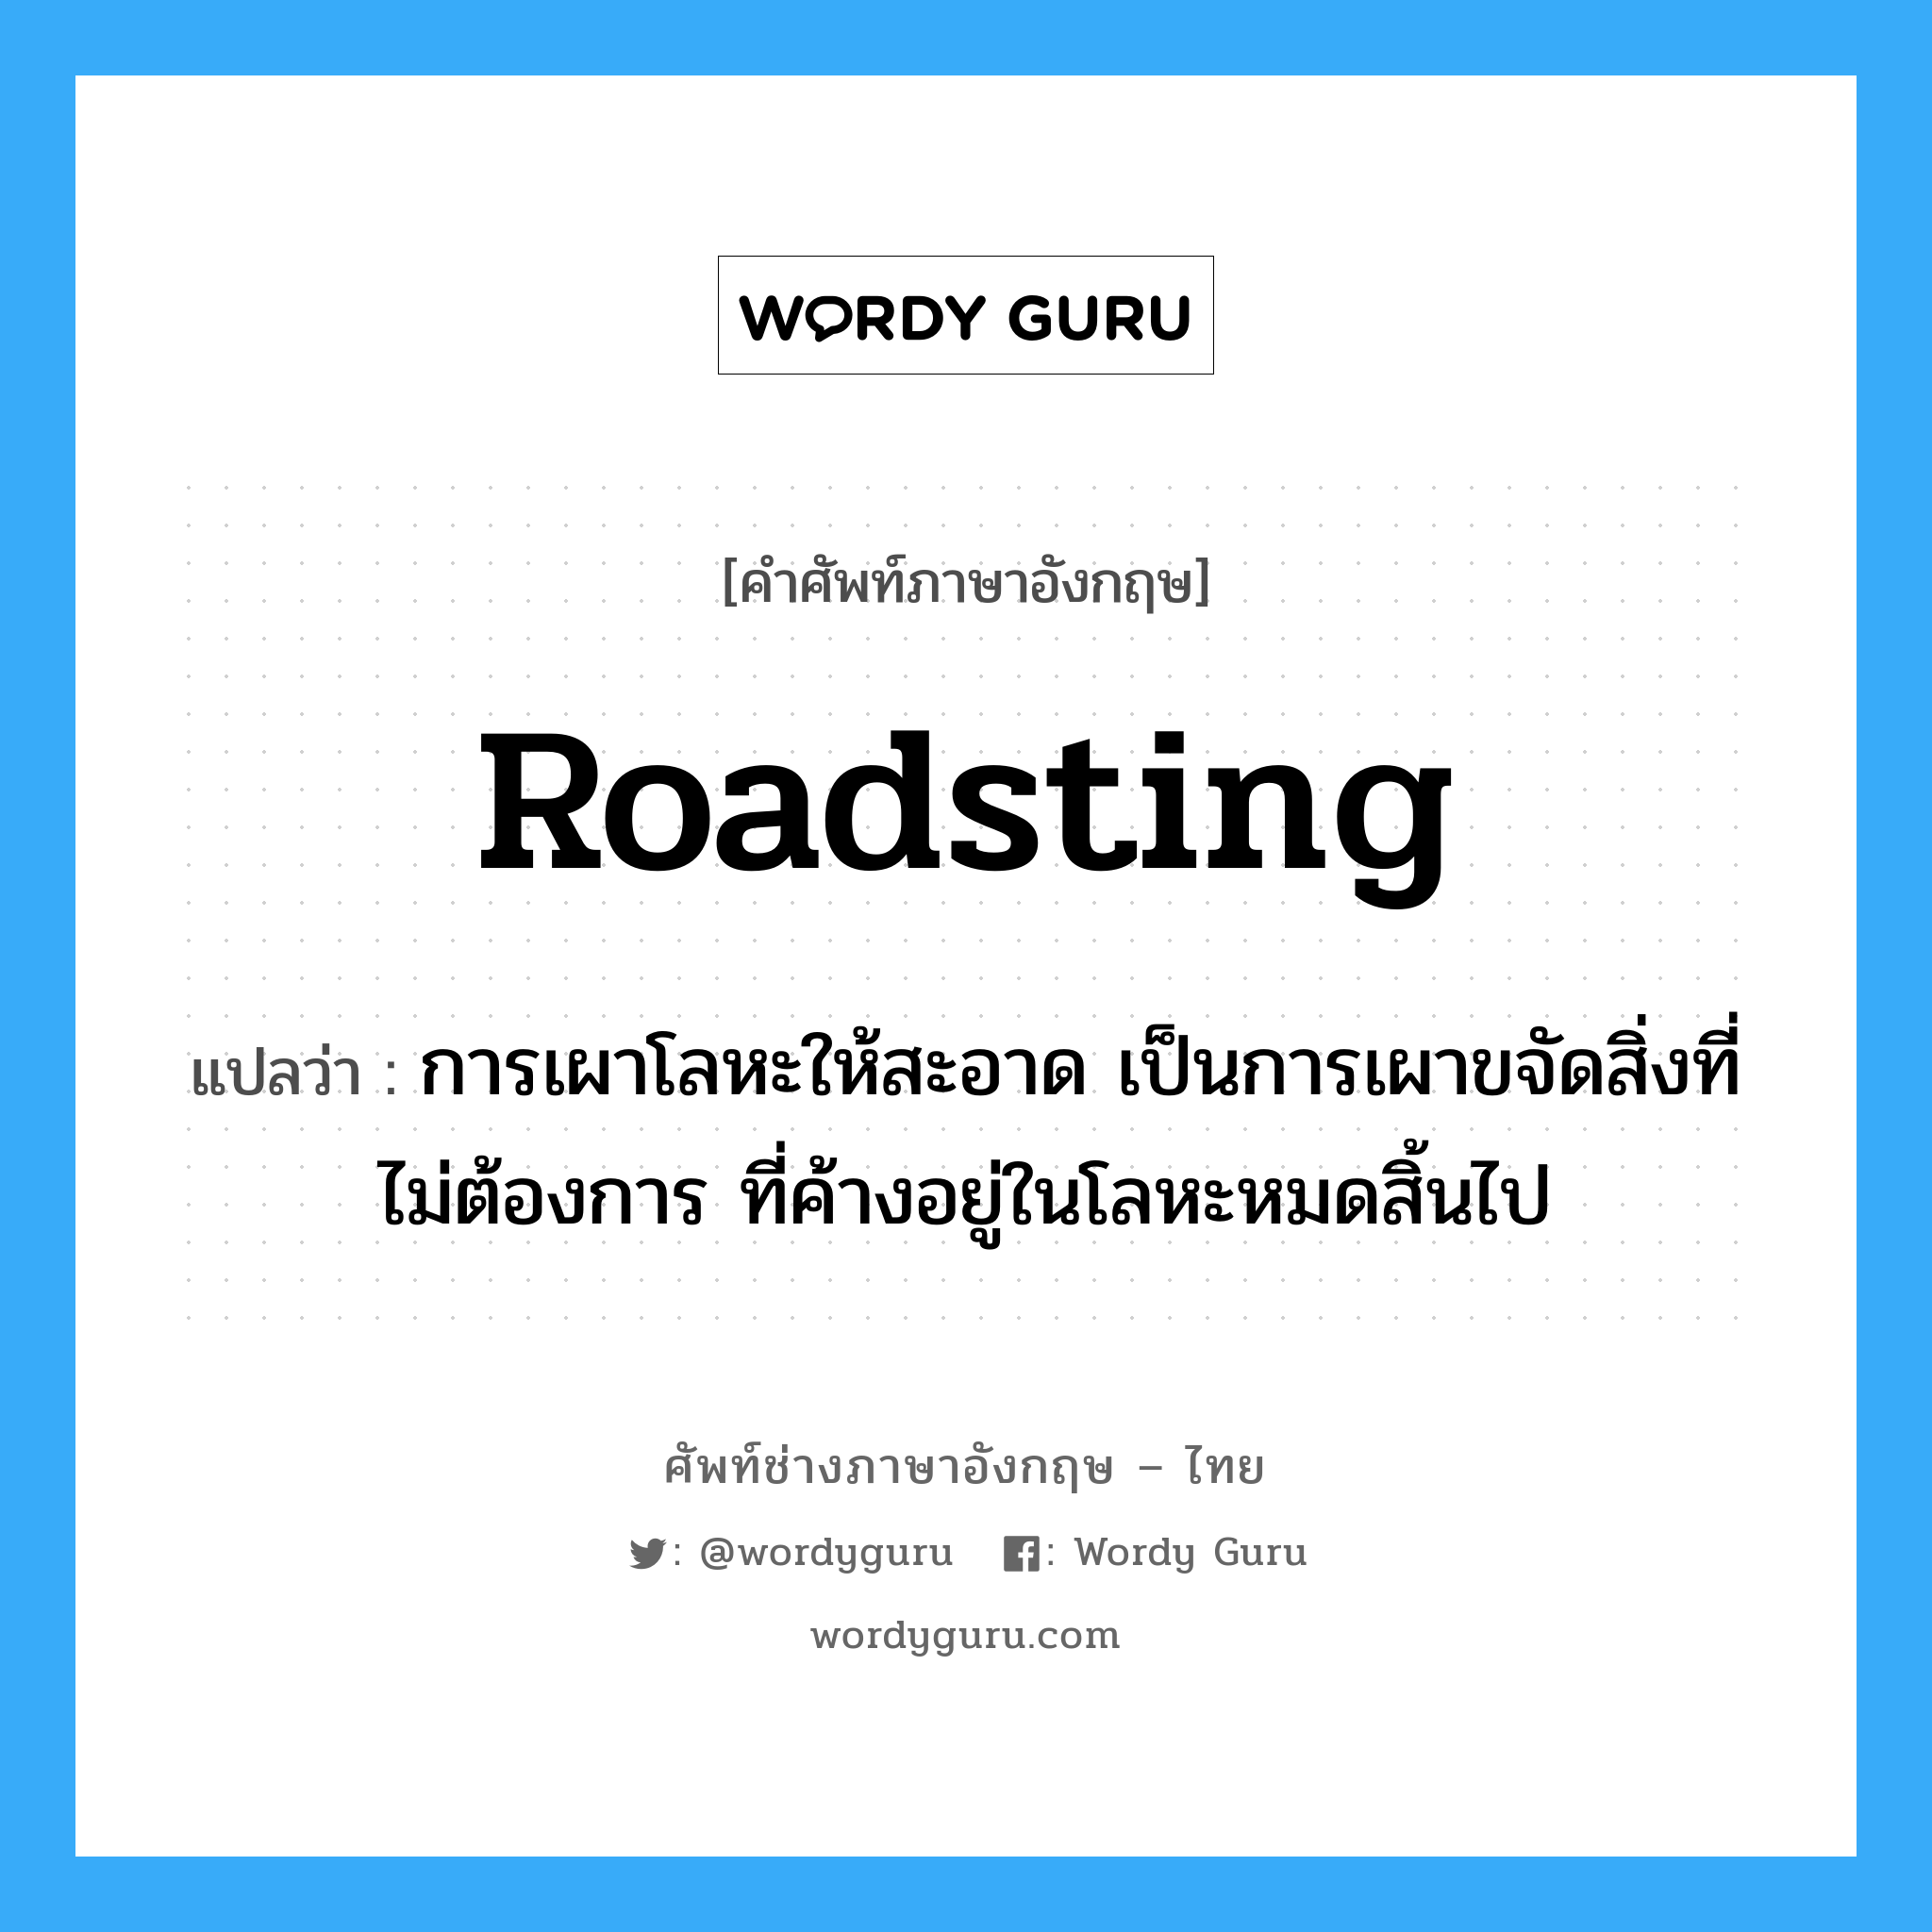 roadsting แปลว่า?, คำศัพท์ช่างภาษาอังกฤษ - ไทย roadsting คำศัพท์ภาษาอังกฤษ roadsting แปลว่า การเผาโลหะให้สะอาด เป็นการเผาขจัดสิ่งที่ไม่ต้องการ ที่ค้างอยู่ในโลหะหมดสิ้นไป